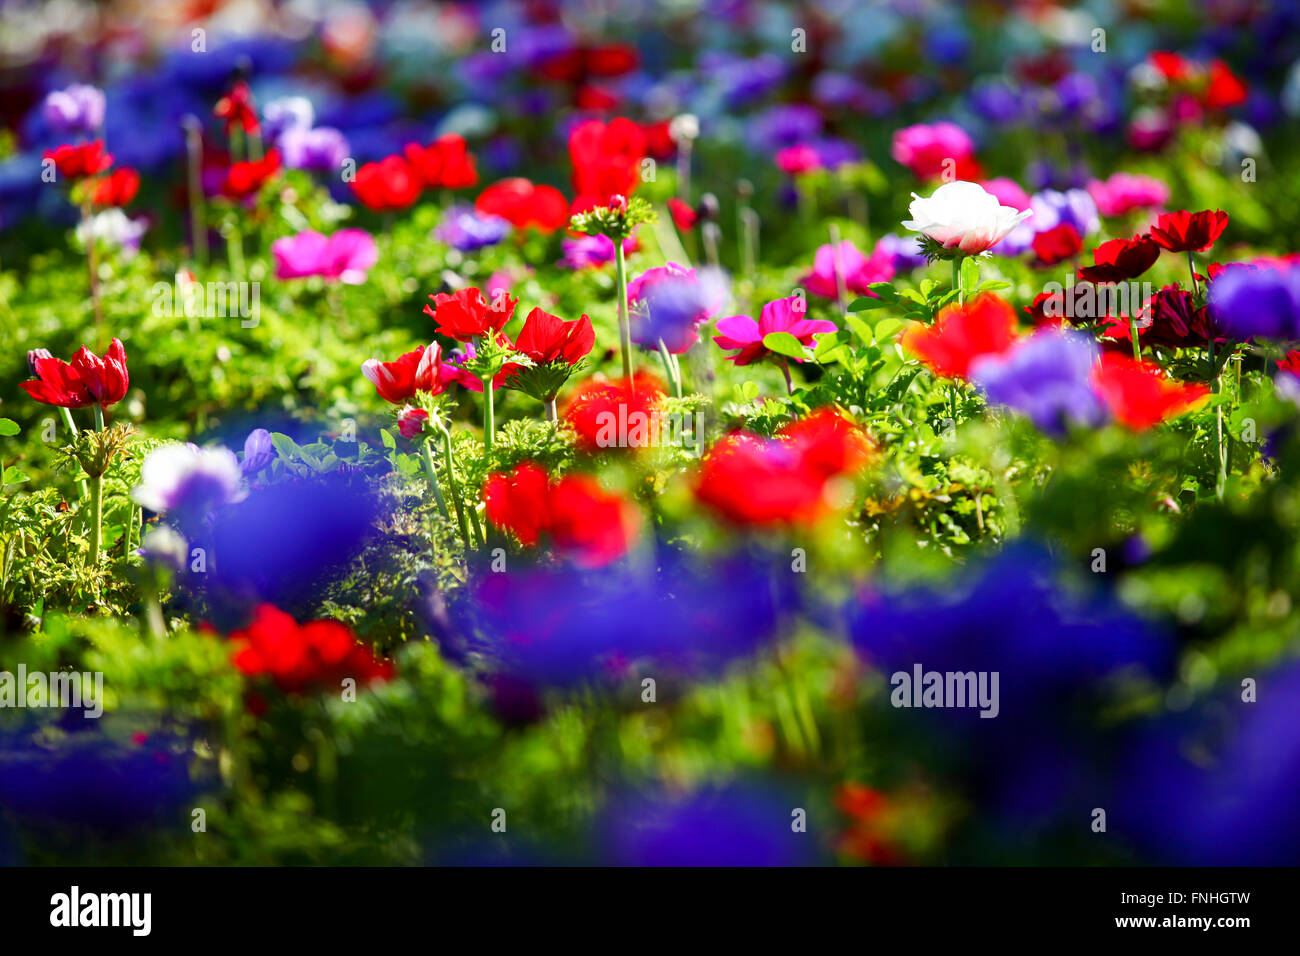 Un campo de cultivo de flores coloridas y vívidas anémona. Fotografiado en Israel Foto de stock